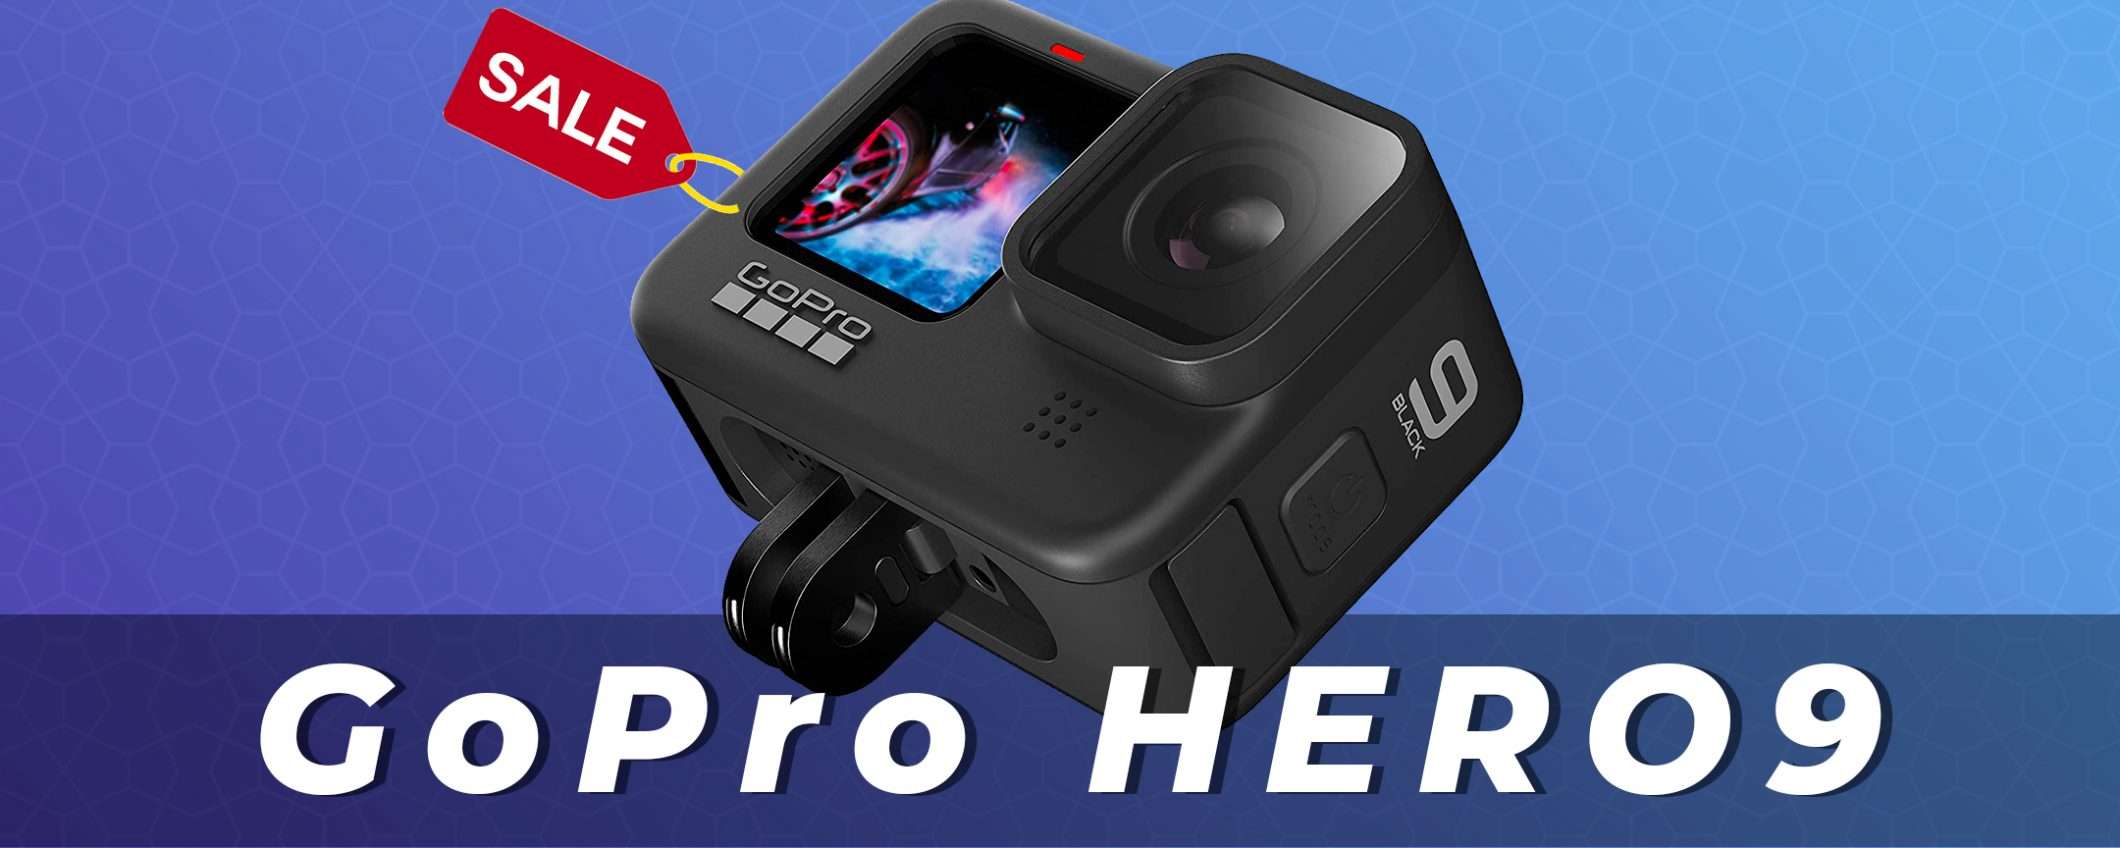 GoPro HERO9 Black: la migliore action cam in forte sconto (-40€)